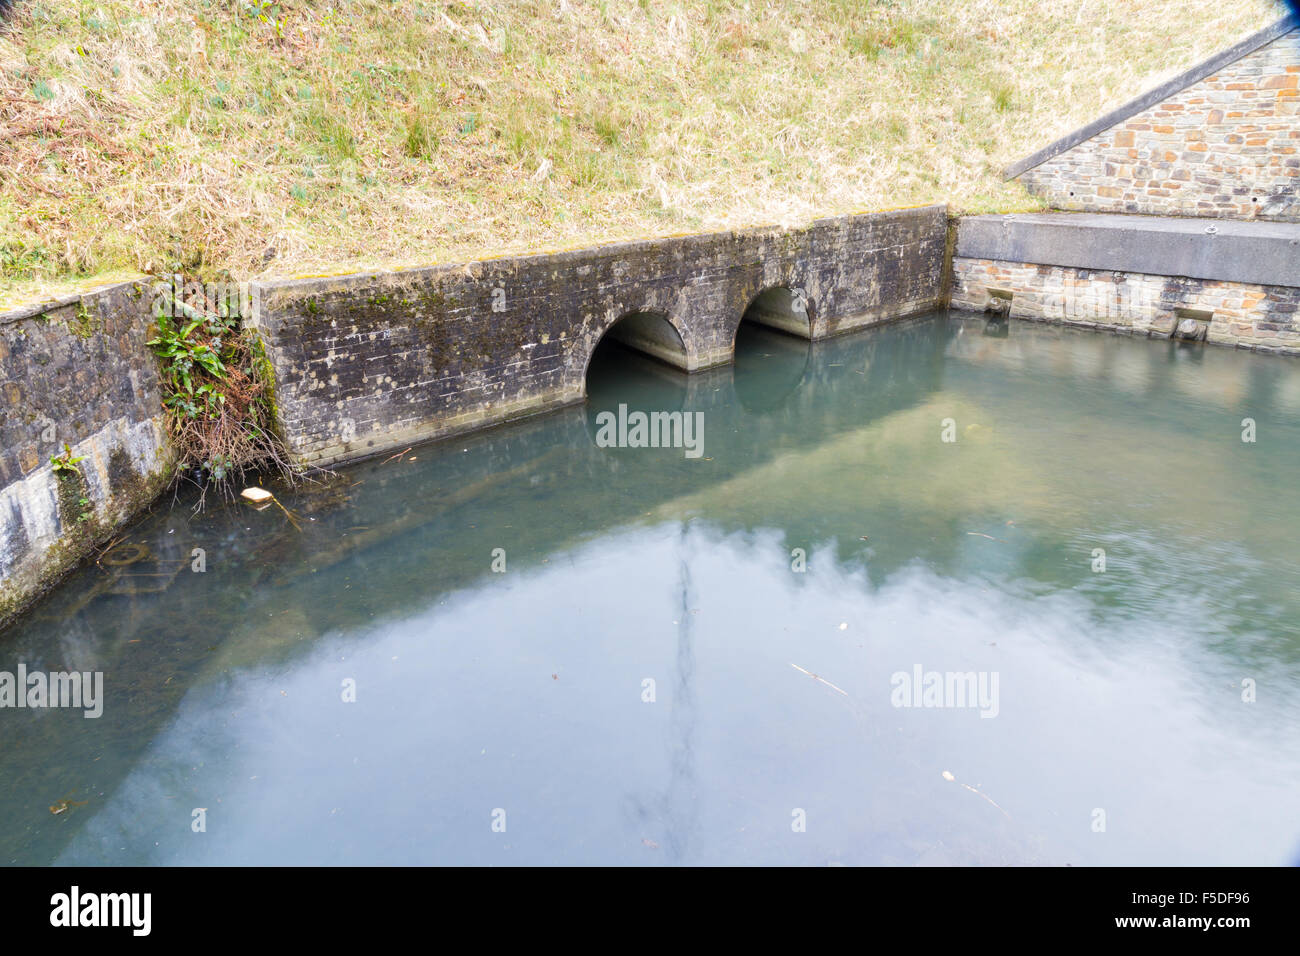 Les tuyaux de drainage menant au bassin Resolven, Neath Canal. Resolven, vallée de Neath Port Talbot, Pays de Galles, Royaume-Uni. Banque D'Images